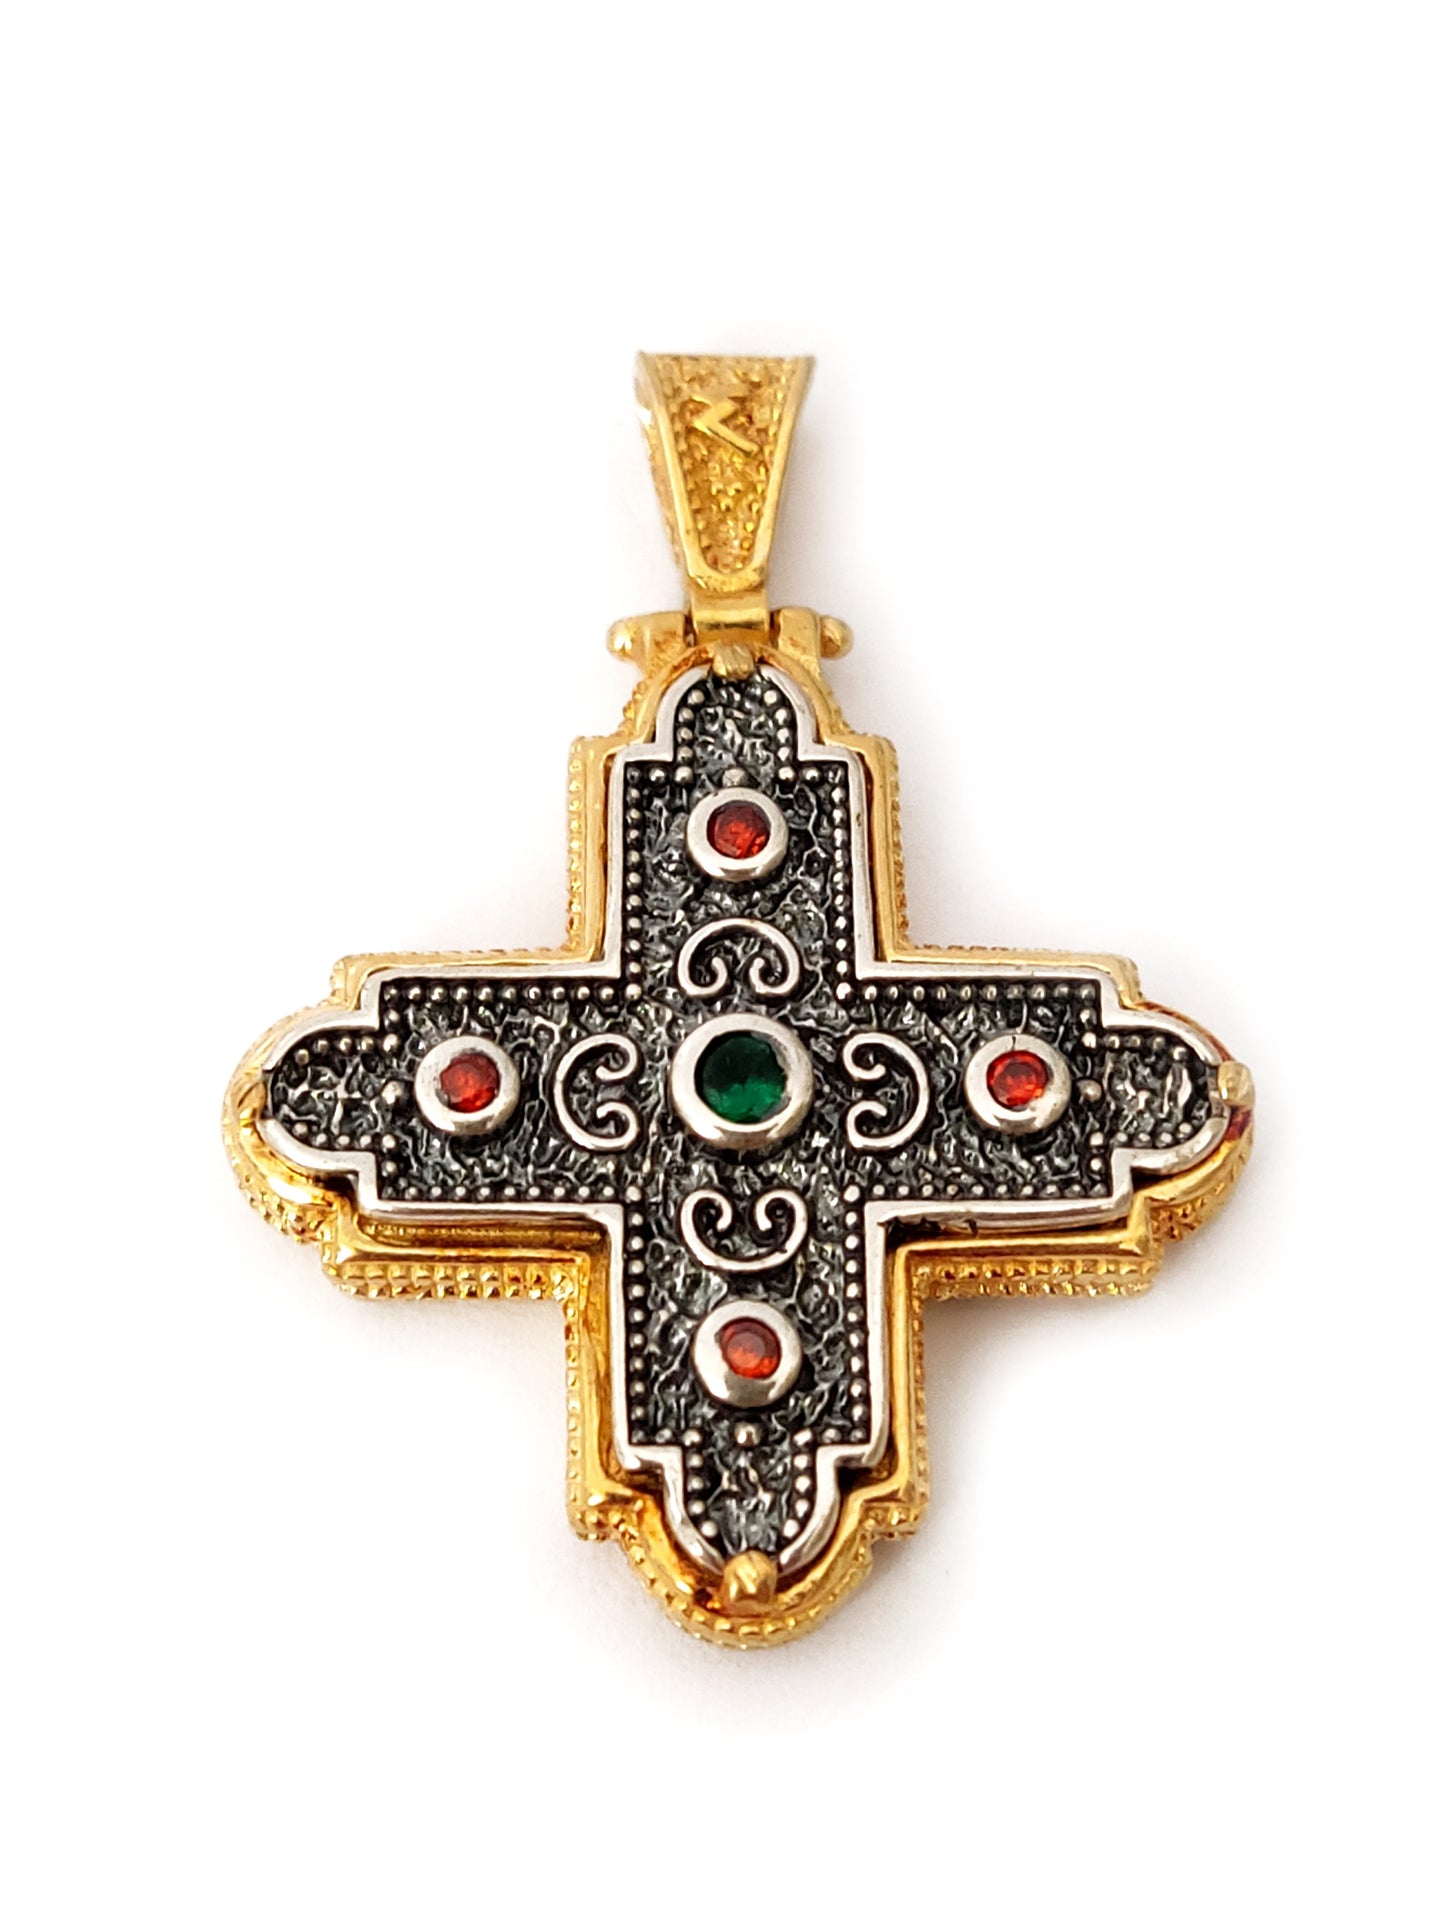 Griechisch-byzantinisches Silberkreuz, 30 x 30 mm, rot-grüne Kristalle